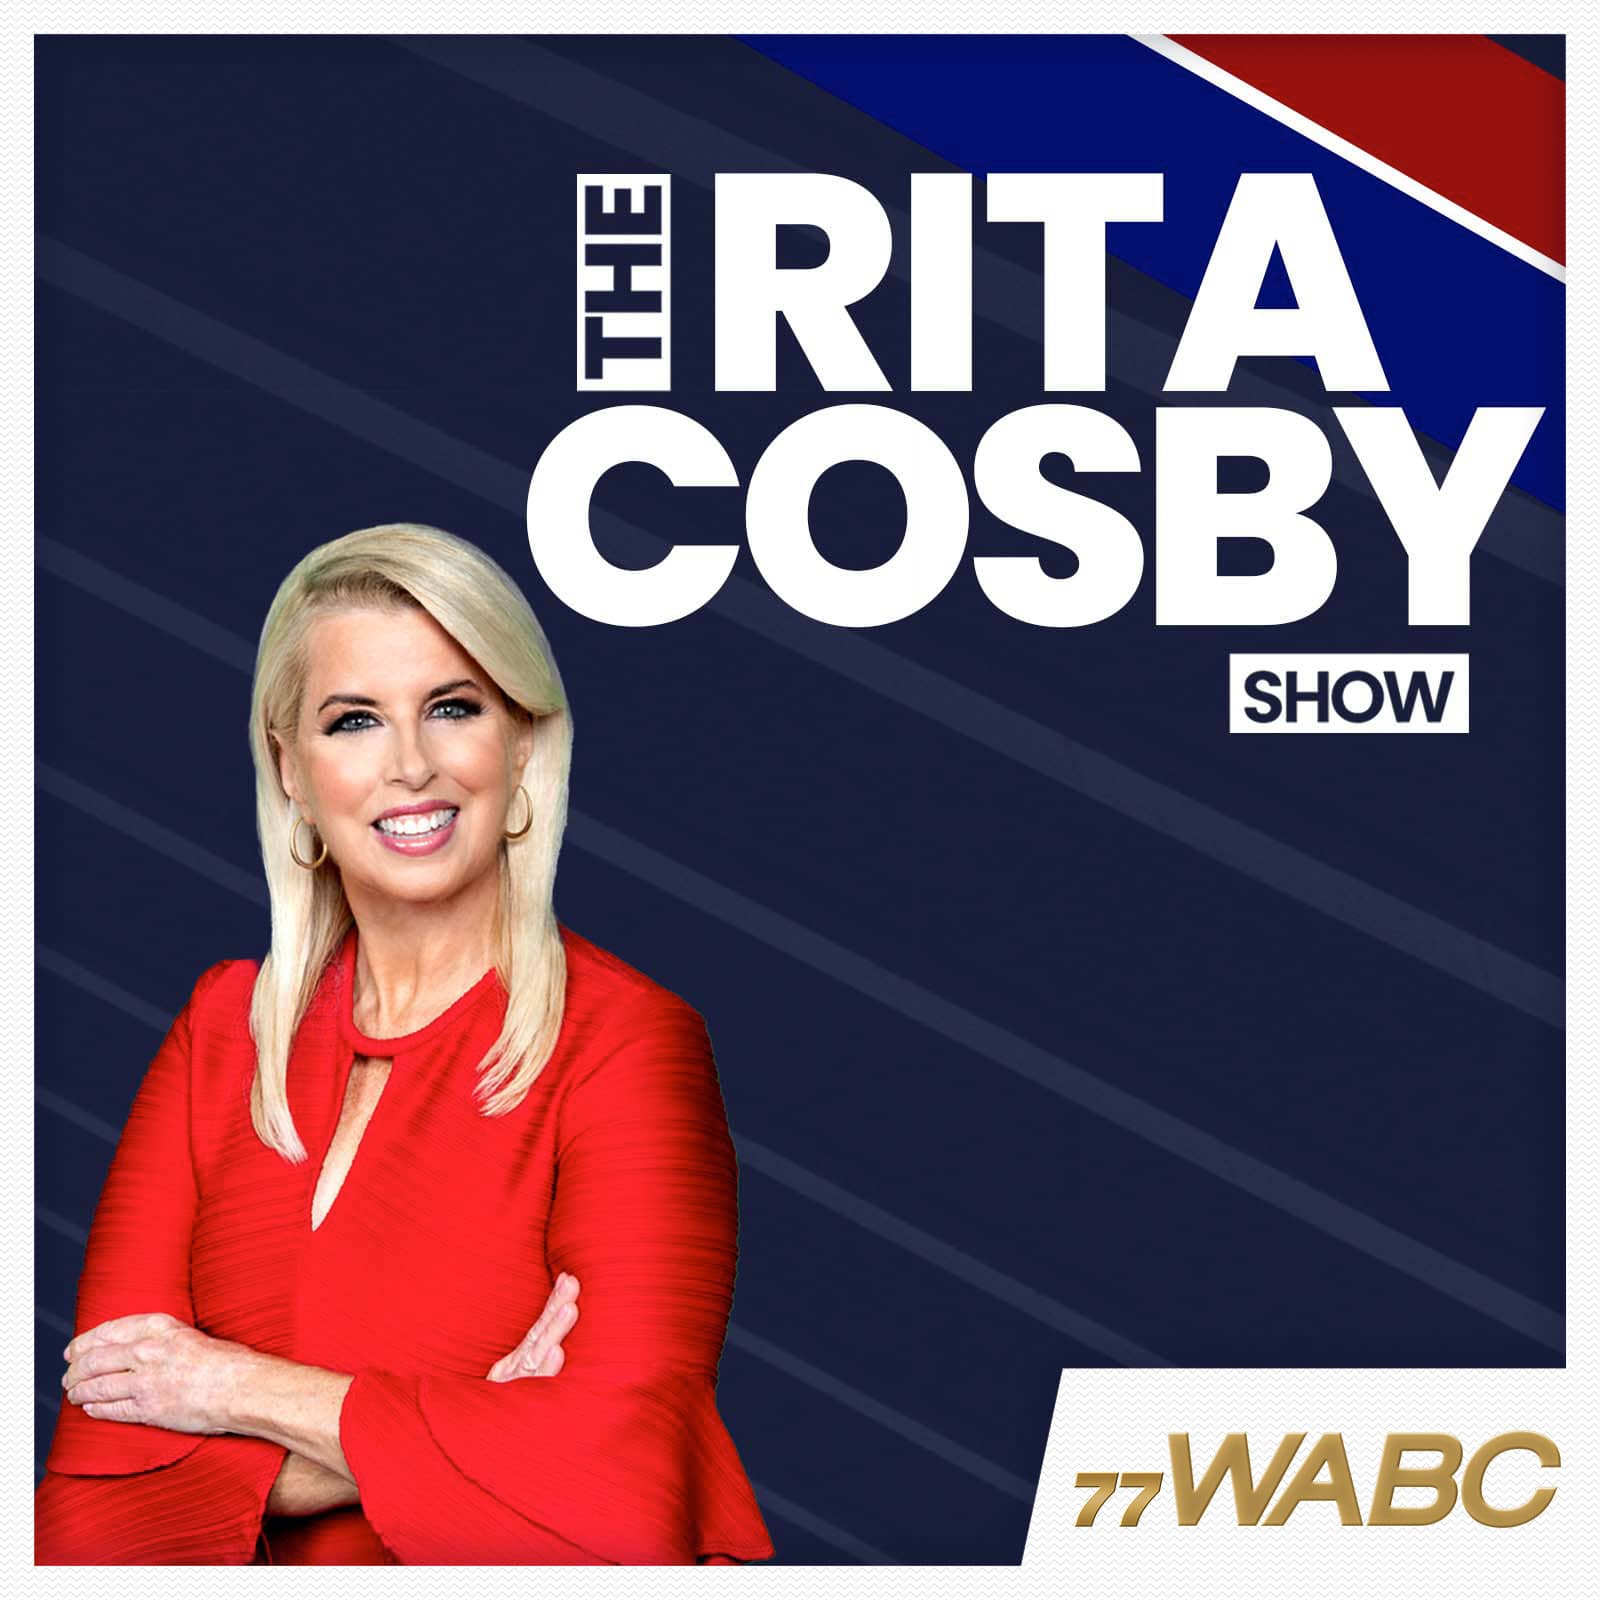 rita-cosby-podcast-new-logo-349